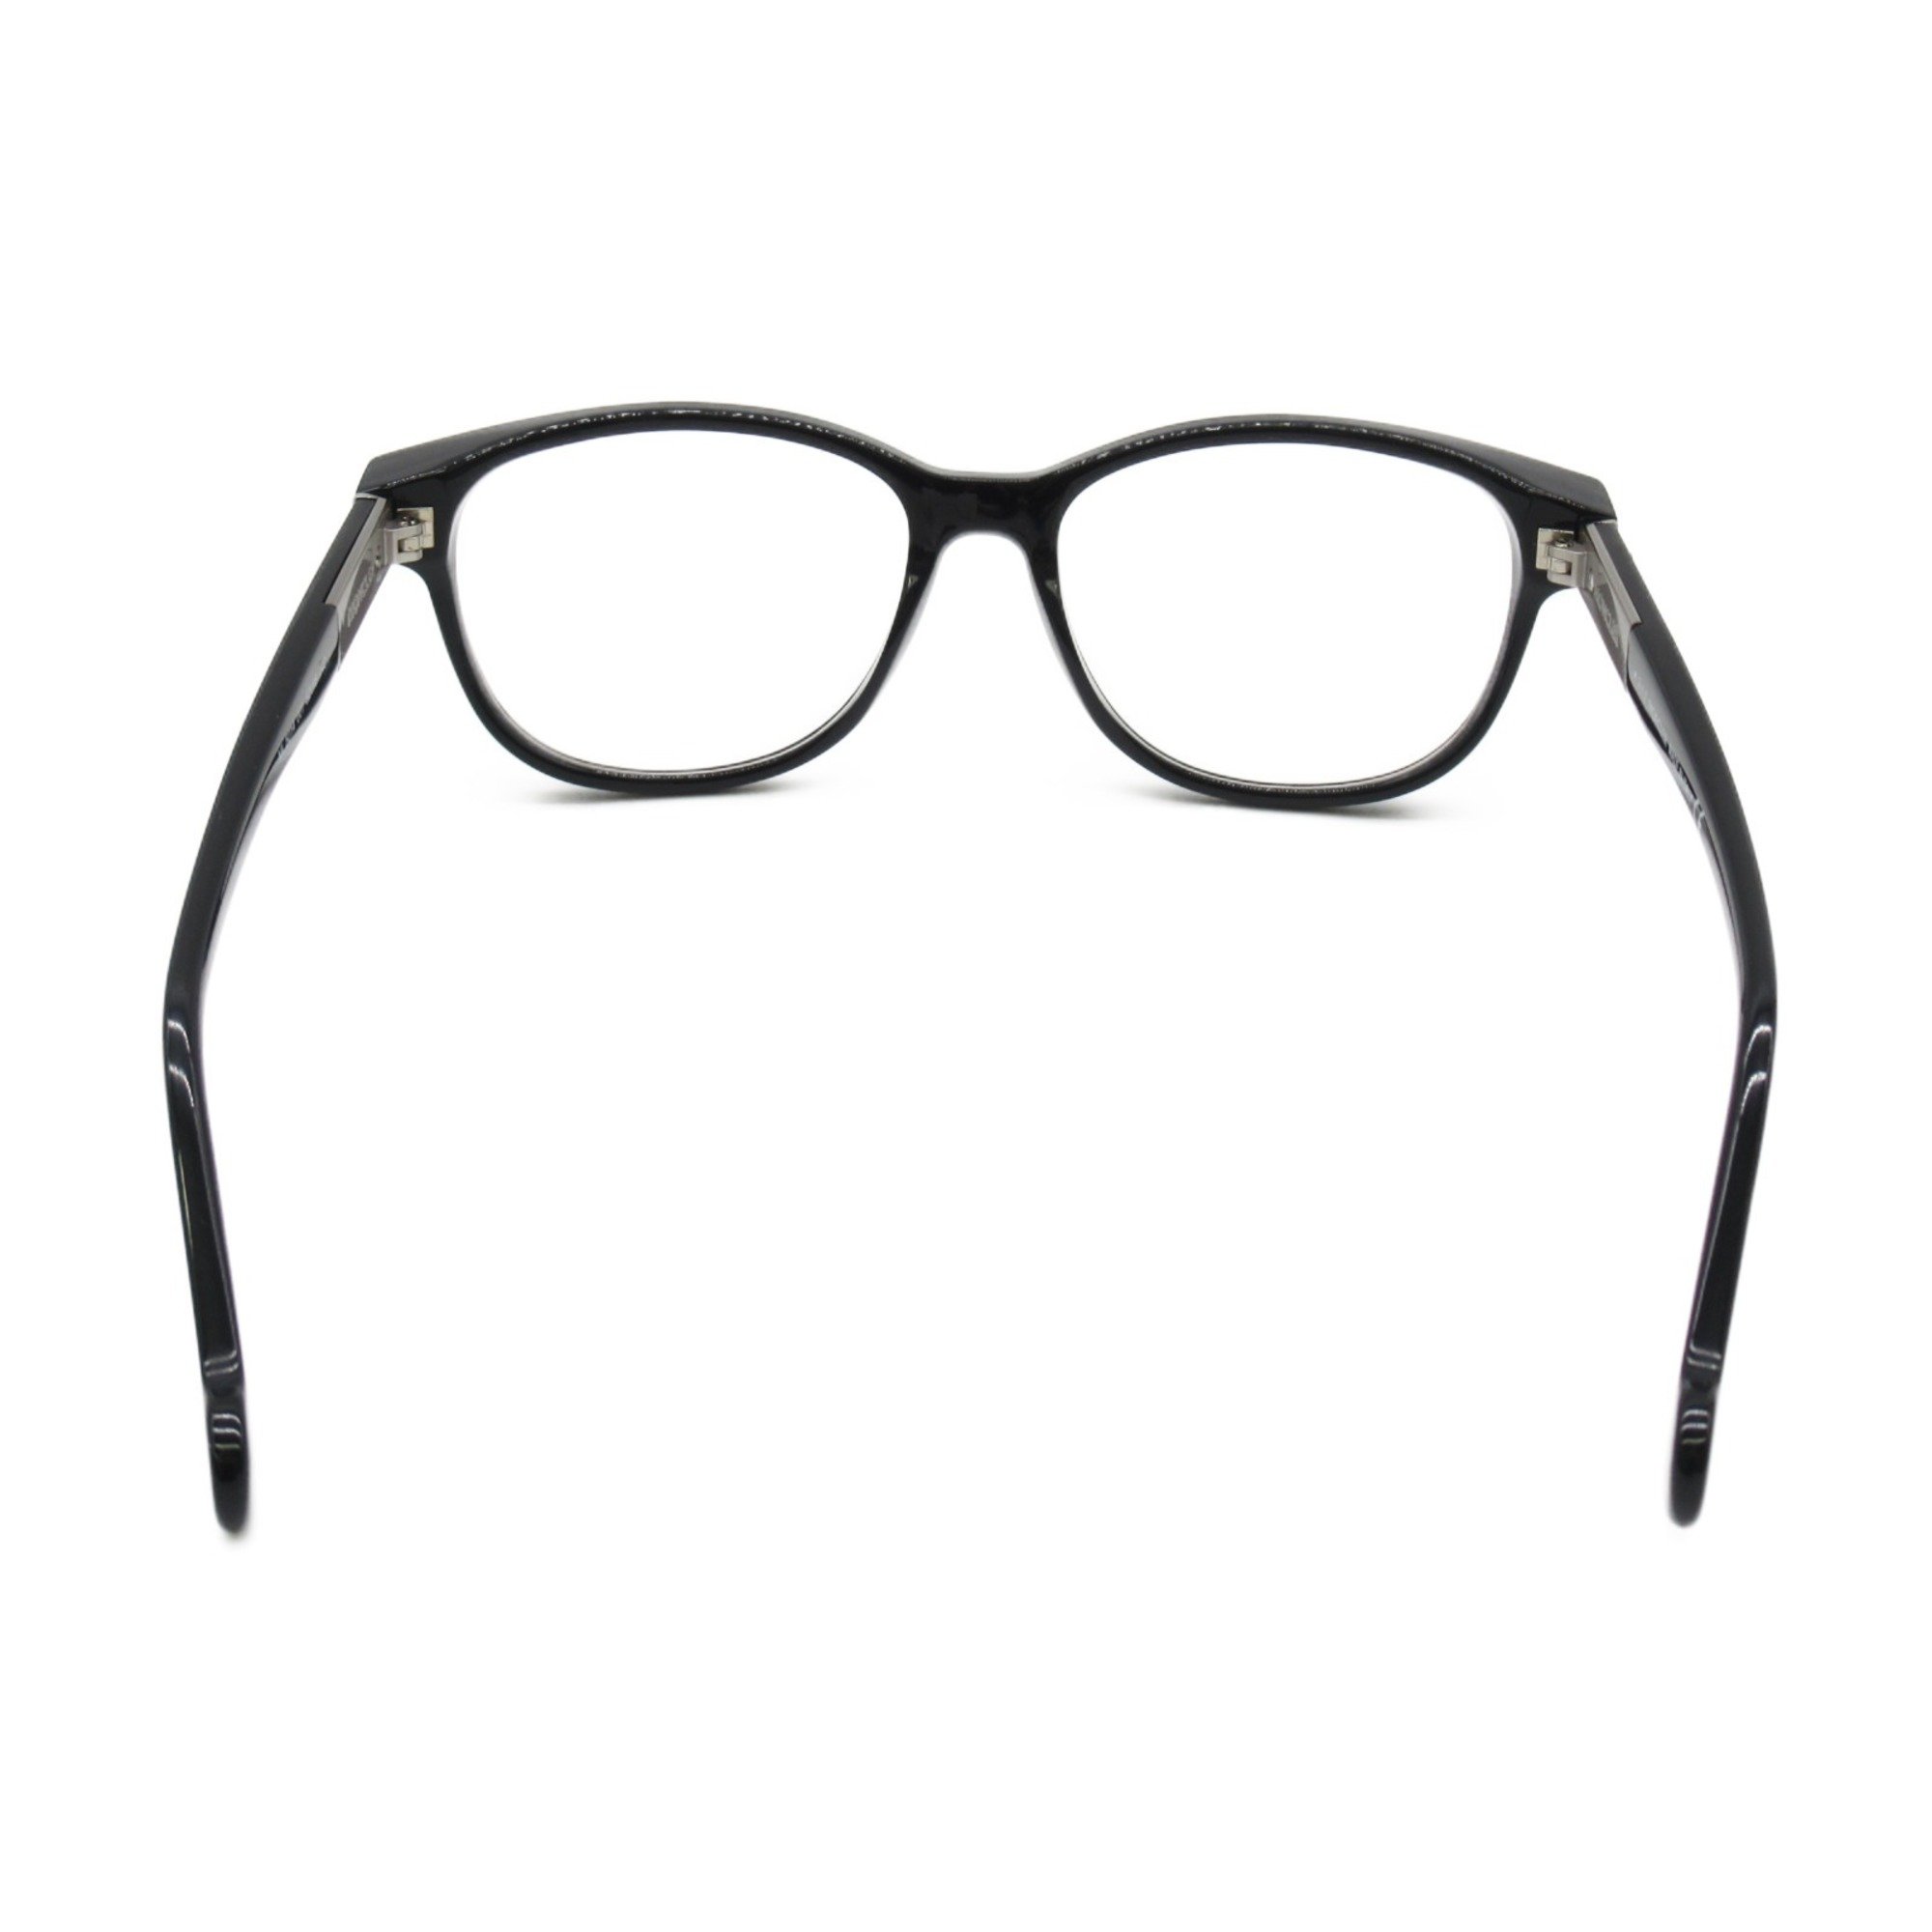 MONCLER Date Glasses Glasses Frame Black Plastic 5014 001(52)